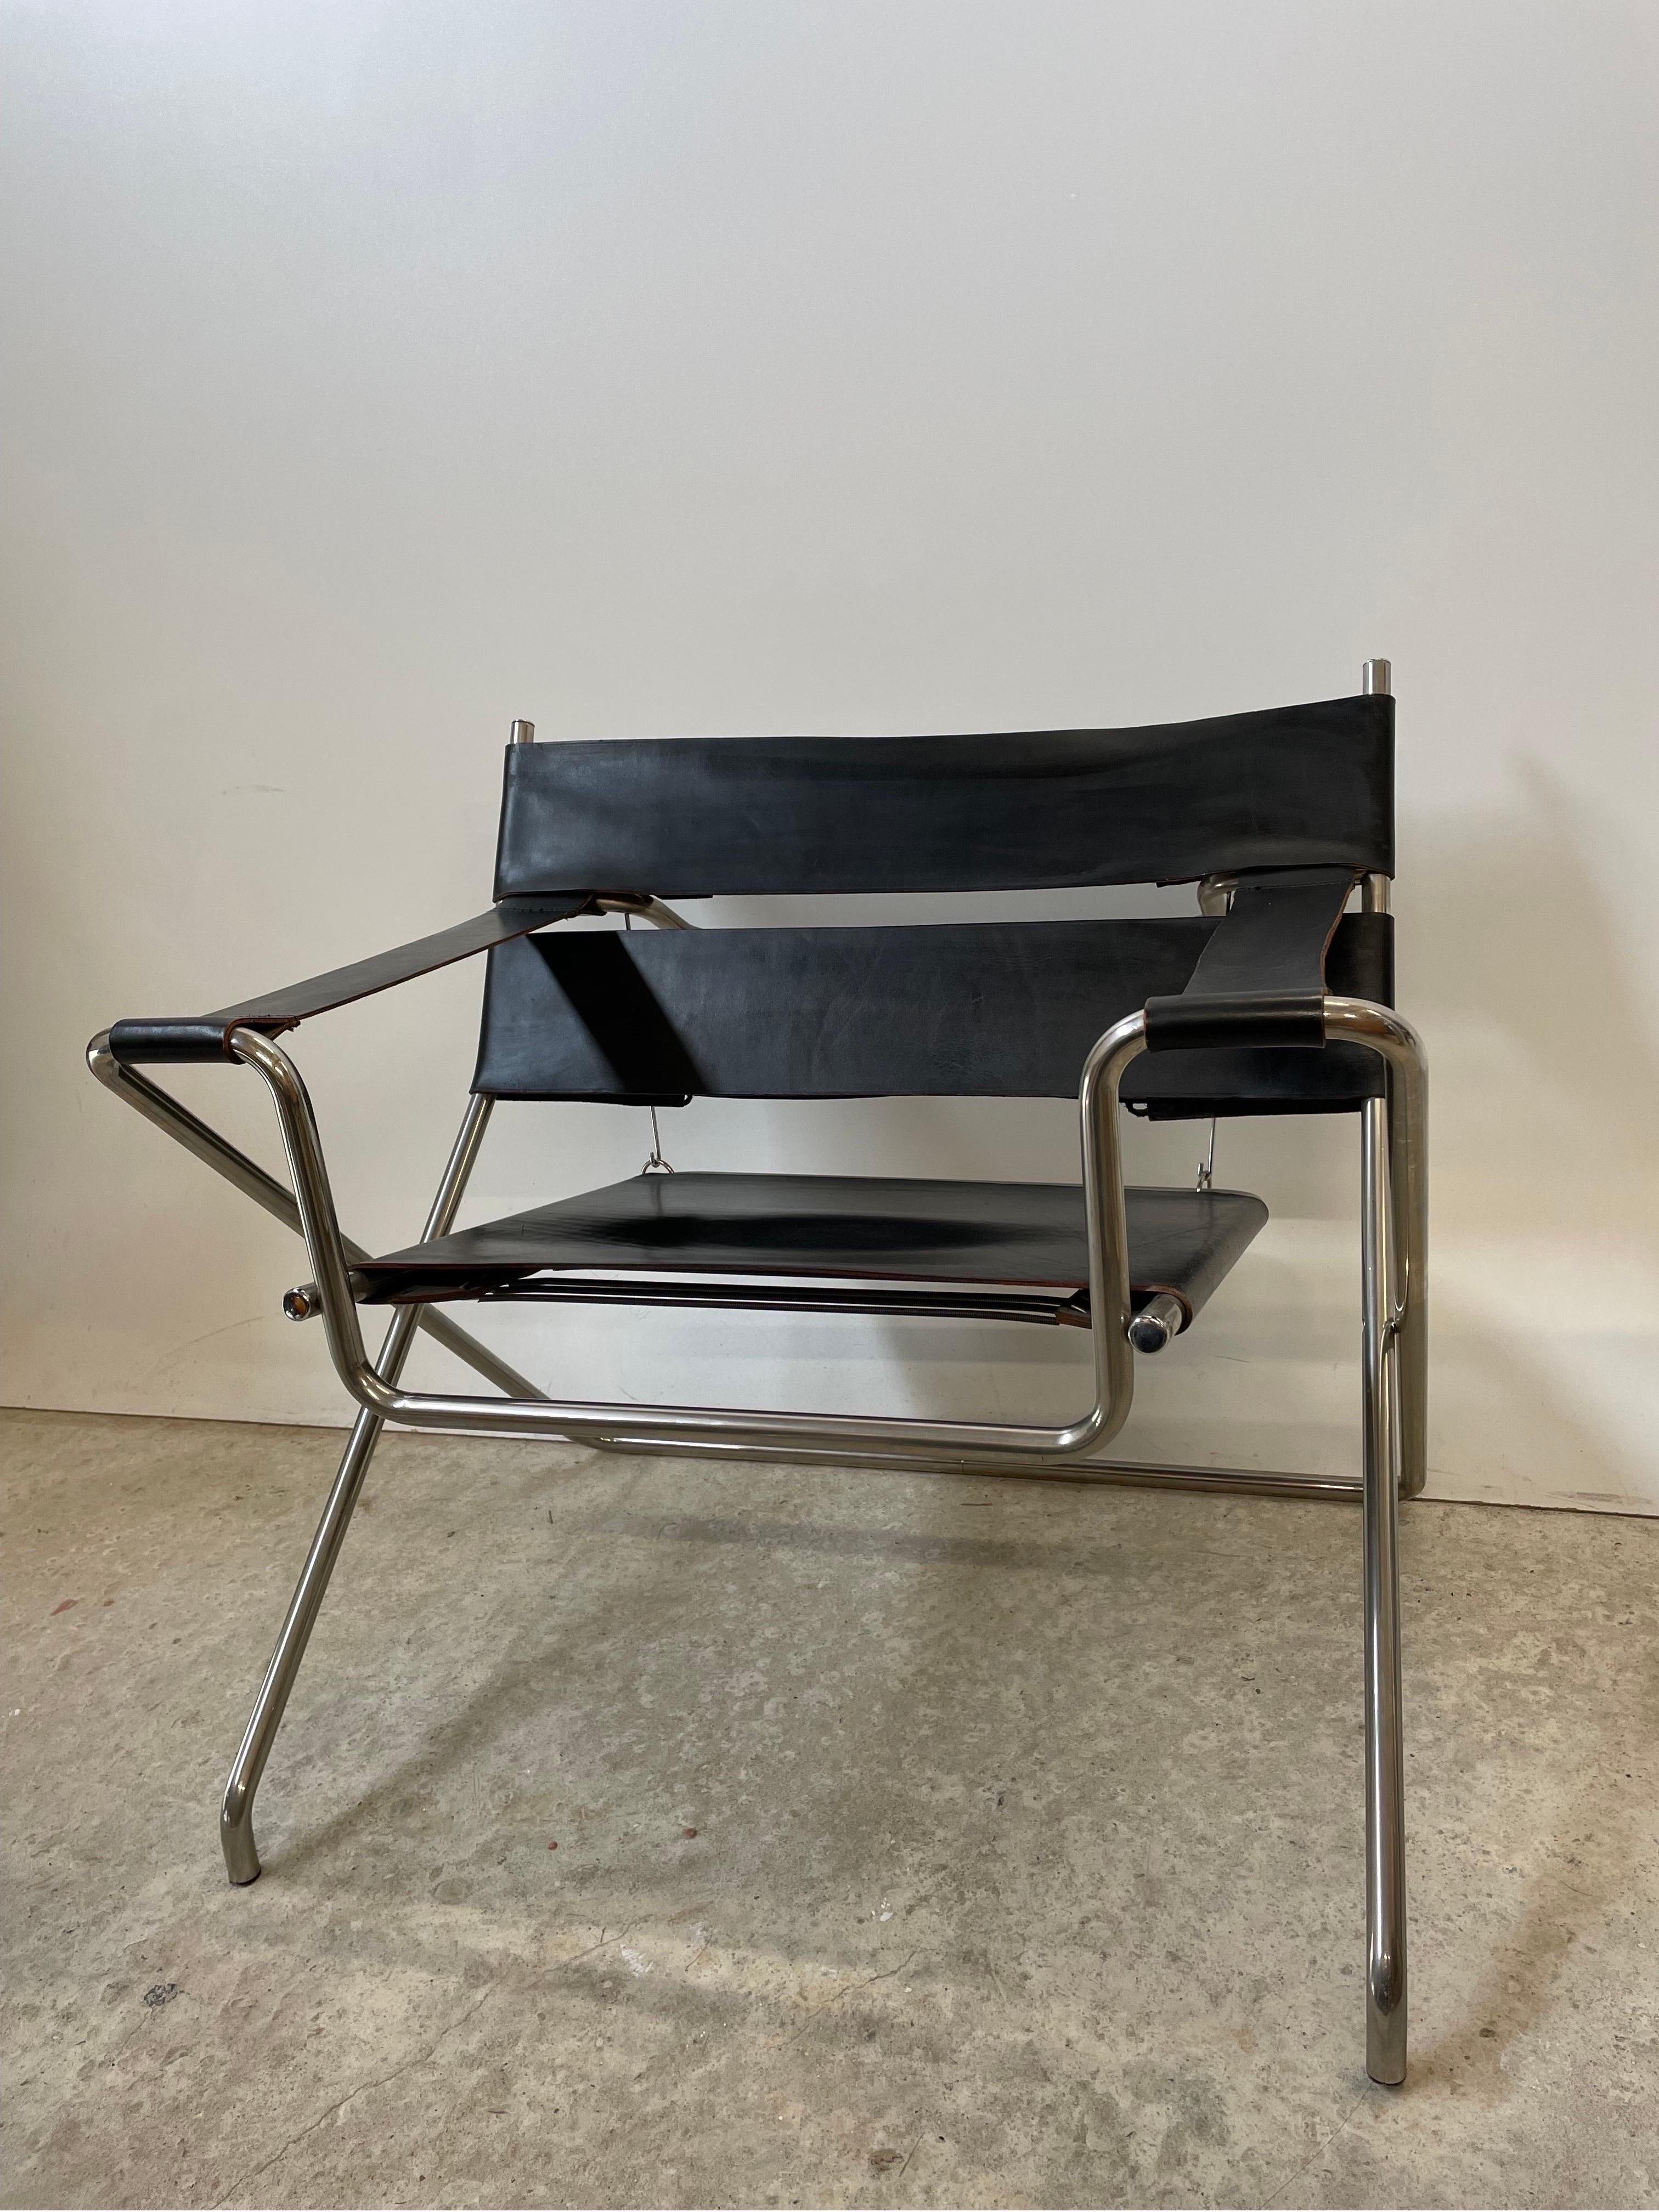 Der D4 chair von Marcel Breuer für Tecta ist nicht zu unrecht einer der bekanntesten Bauhaus Klassiker überhaupt. Und deshalb erfüllt es mich mit Stolz euch diesen zu 100% originalen Sessel vorzustellen. 

Dieses zeitlose Meisterwerk überzeugt mit